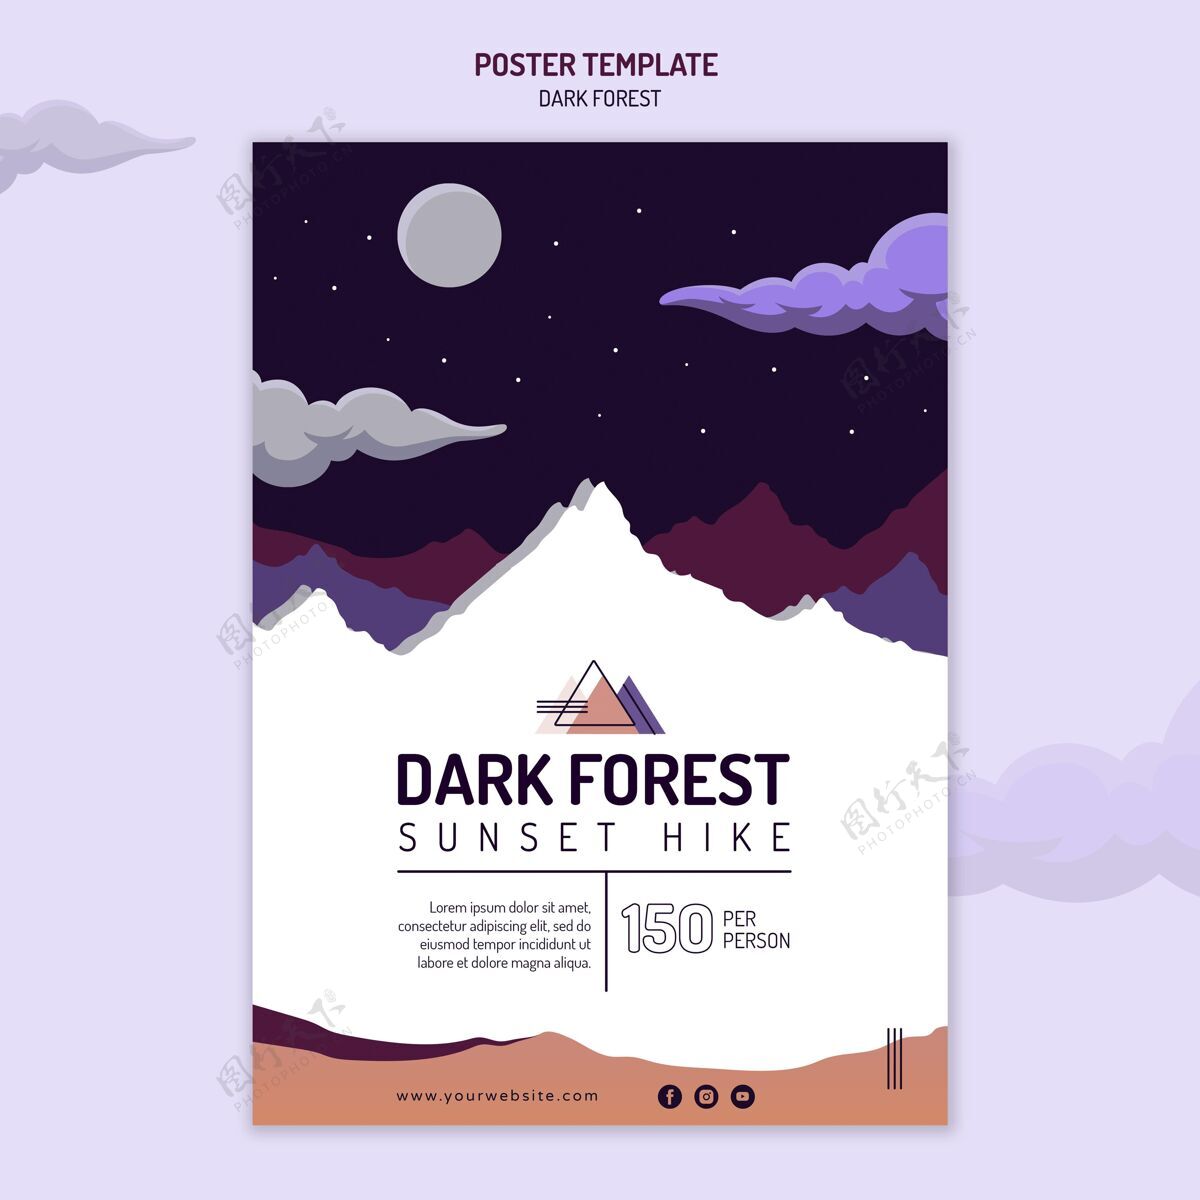 森林黑暗森林徒步旅行垂直海报黑暗远足探险